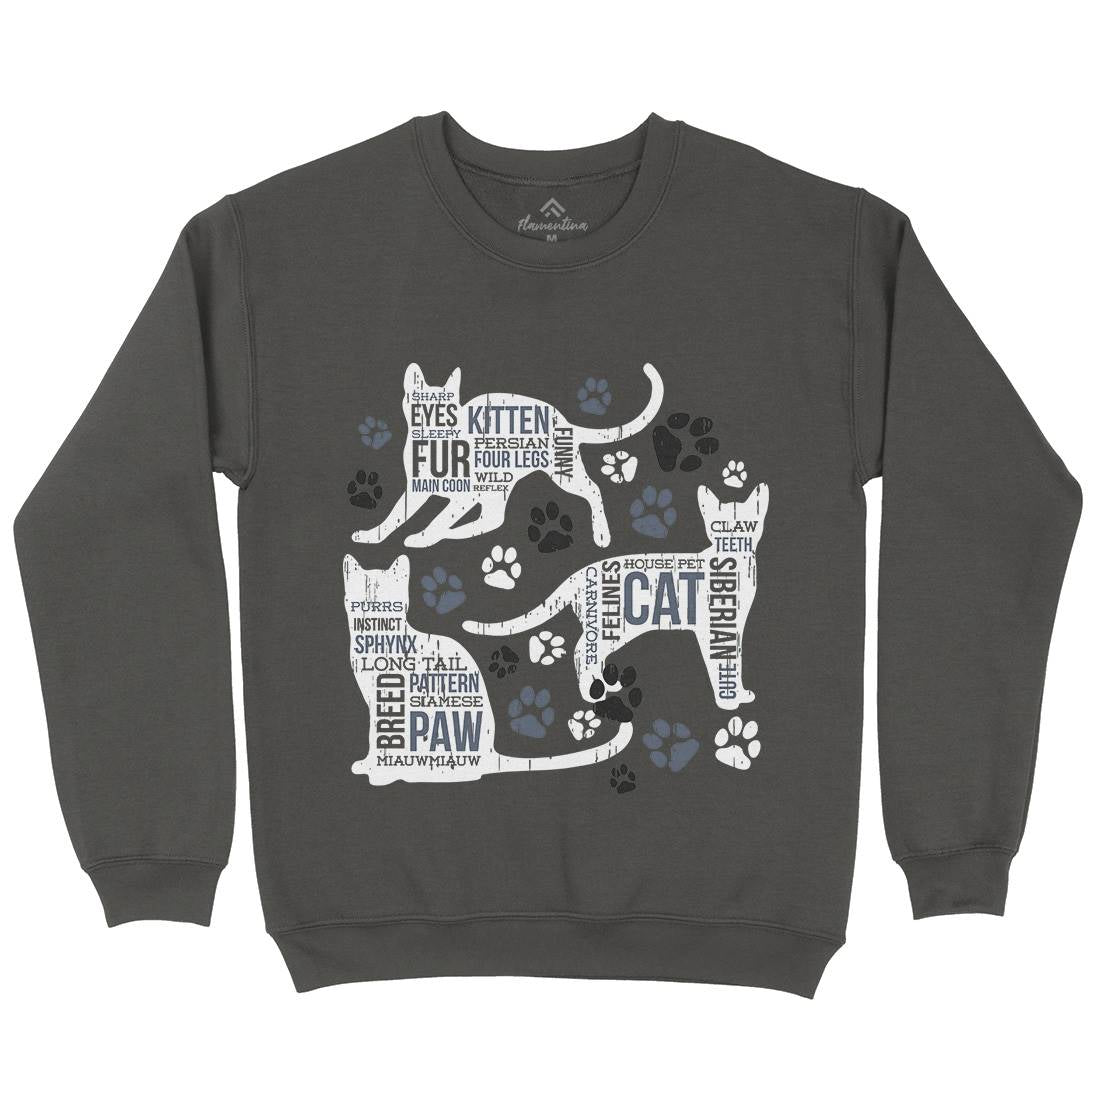 Cat Itself Kids Crew Neck Sweatshirt Animals B695